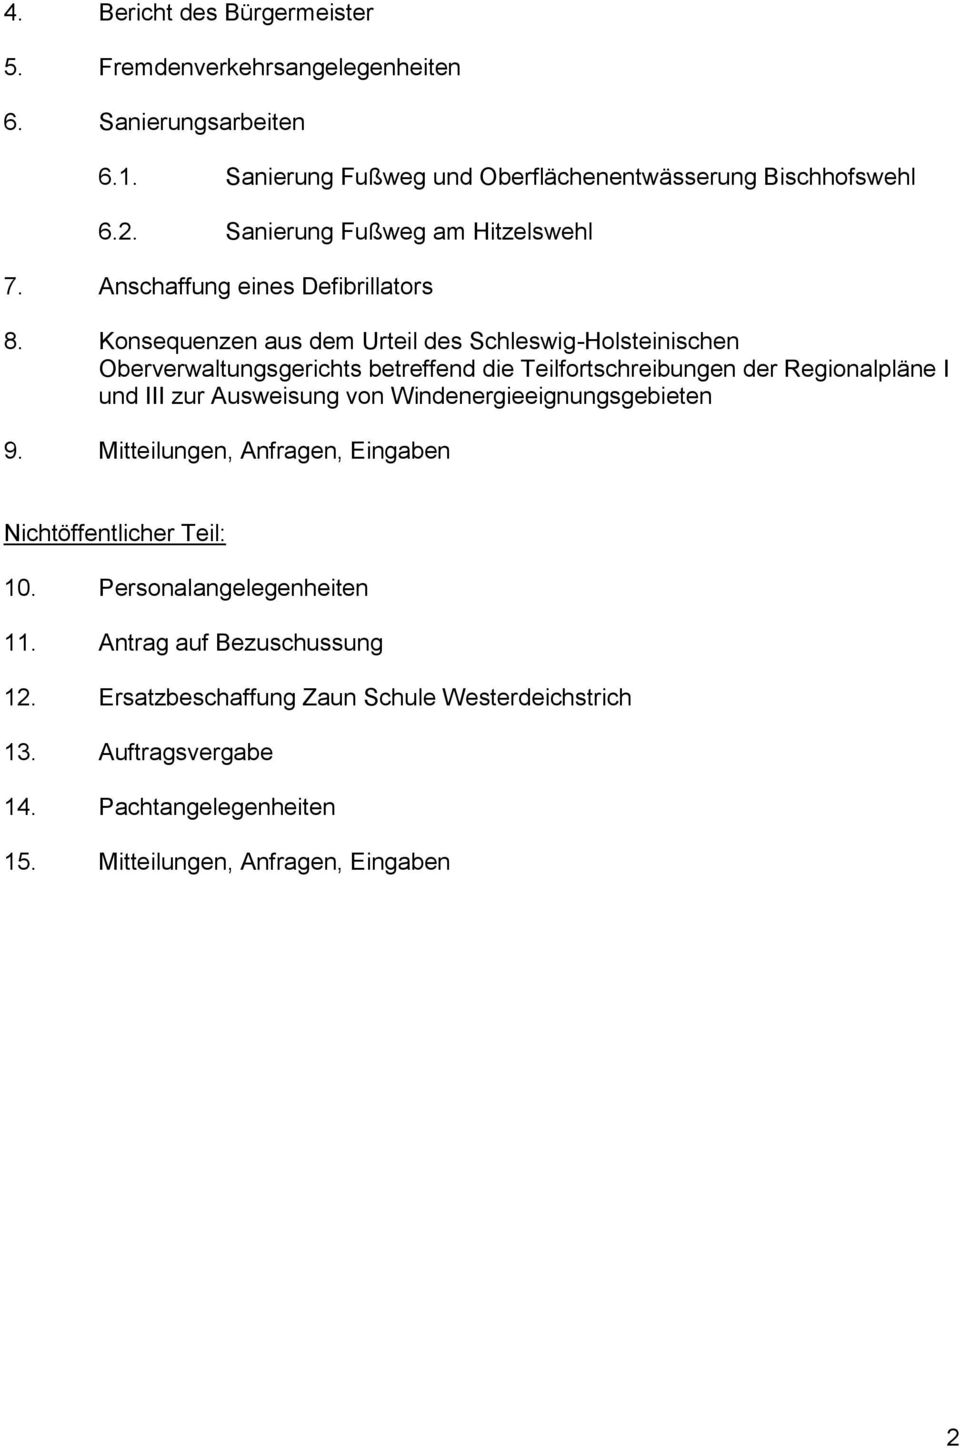 Konsequenzen aus dem Urteil des Schleswig-Holsteinischen Oberverwaltungsgerichts betreffend die Teilfortschreibungen der Regionalpläne I und III zur Ausweisung von